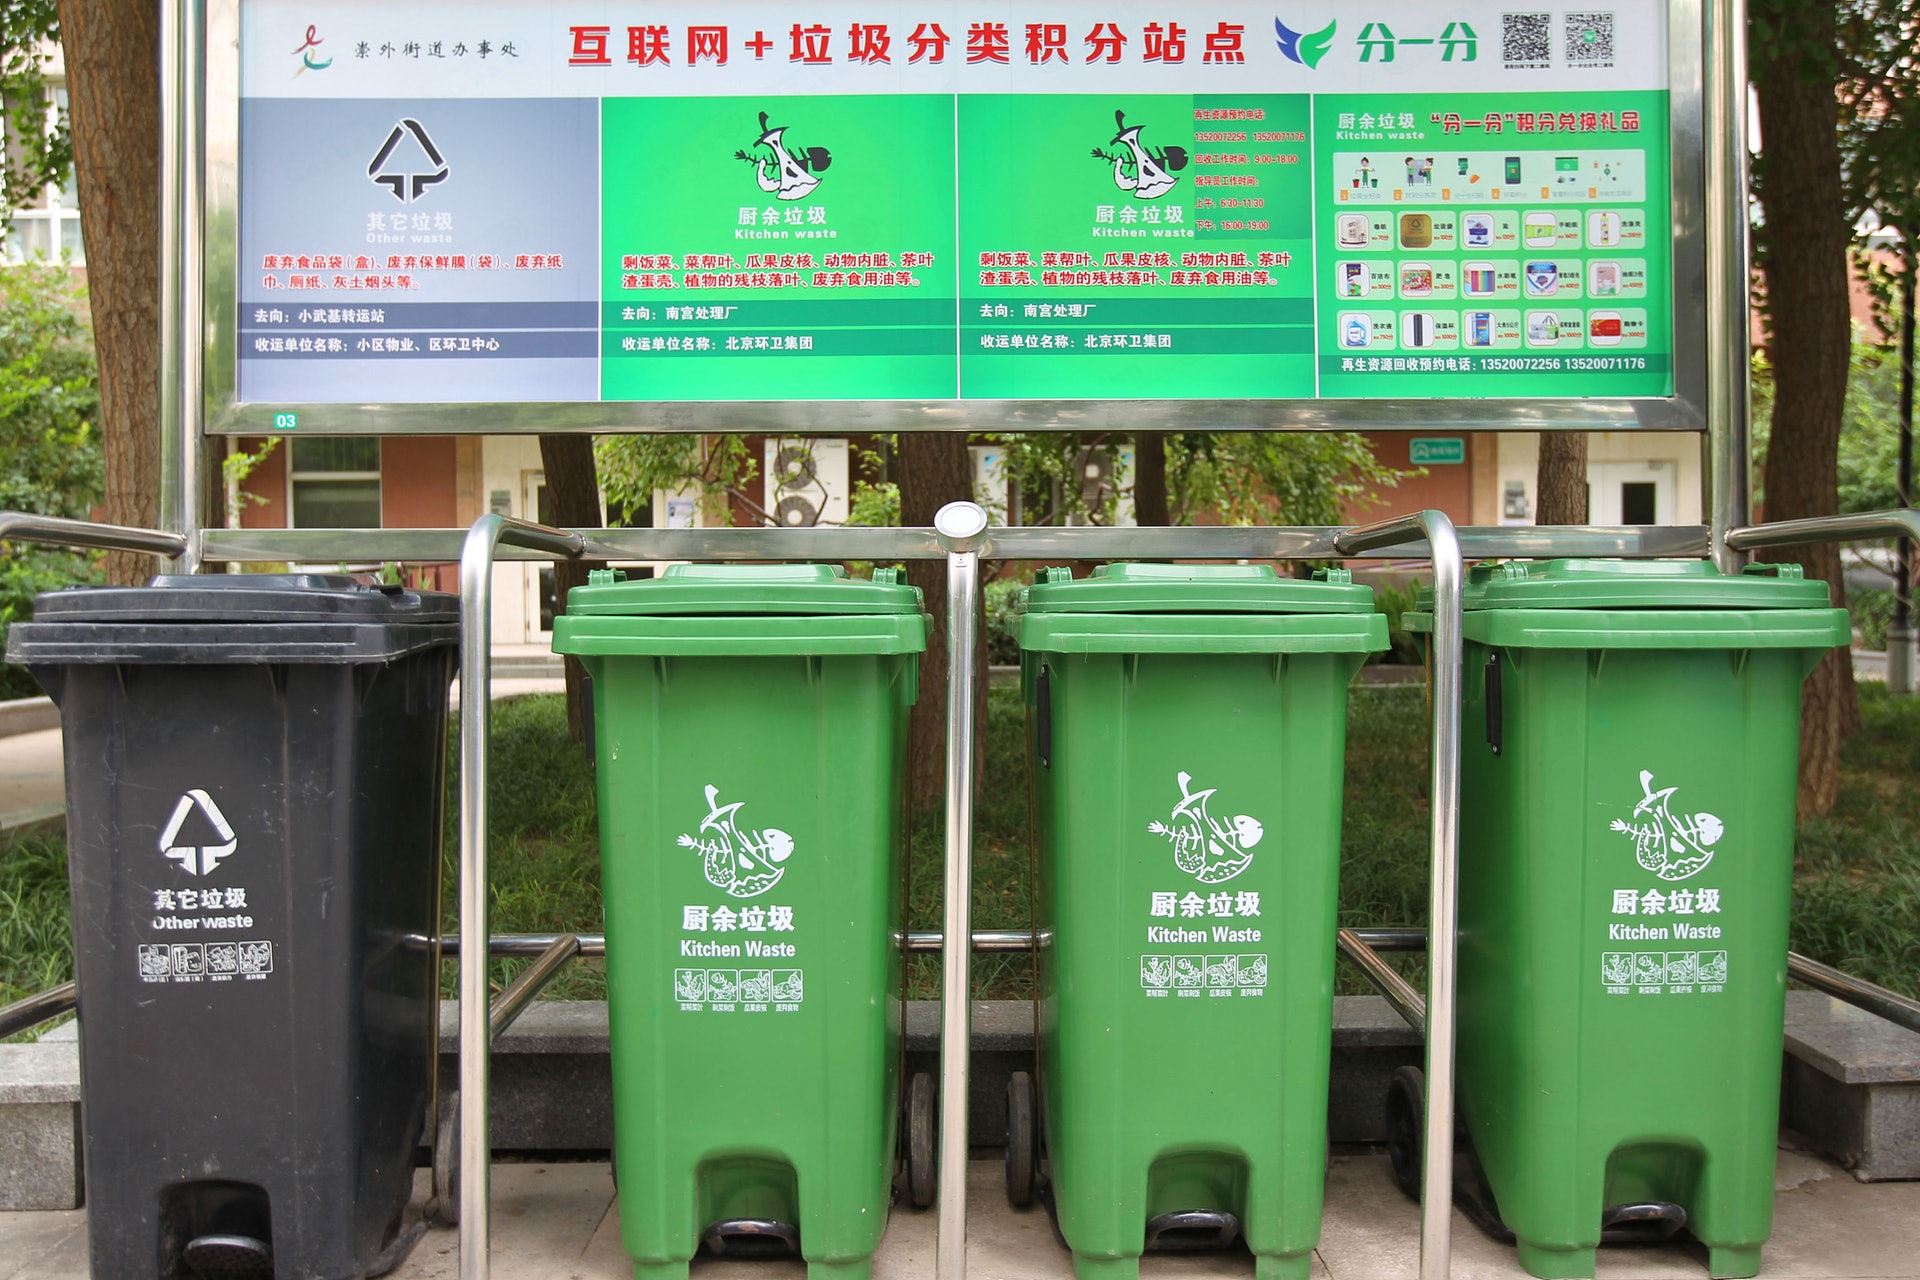 北京垃圾分類的標準為：廚餘垃圾、有害垃圾、其它垃圾、可回收物。（視覺中國）